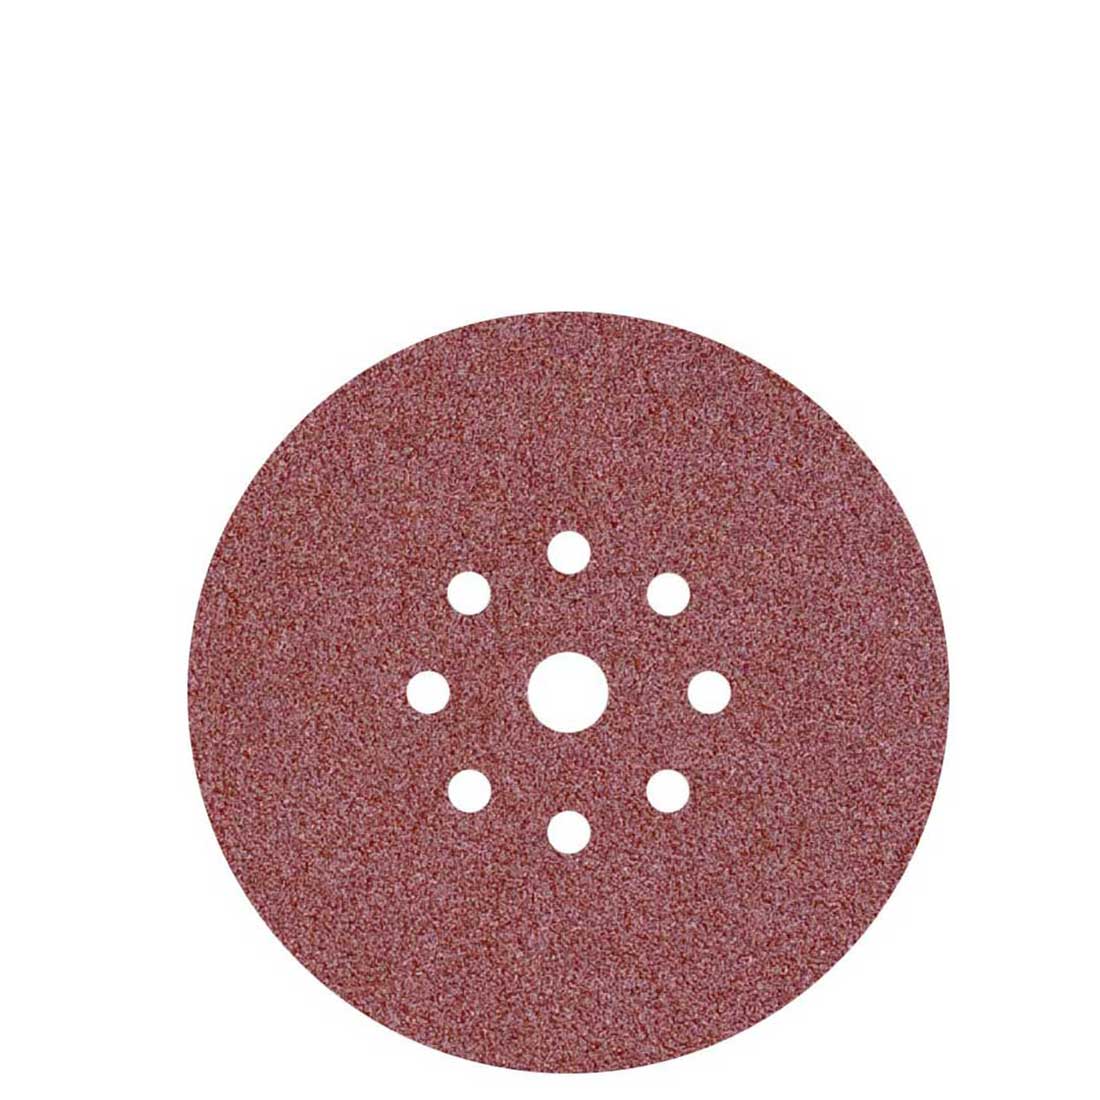 MioTools Klett-Schleifscheiben für Trockenbauschleifer, K16–240, Ø 225 mm / 9-Loch / Normalkorund